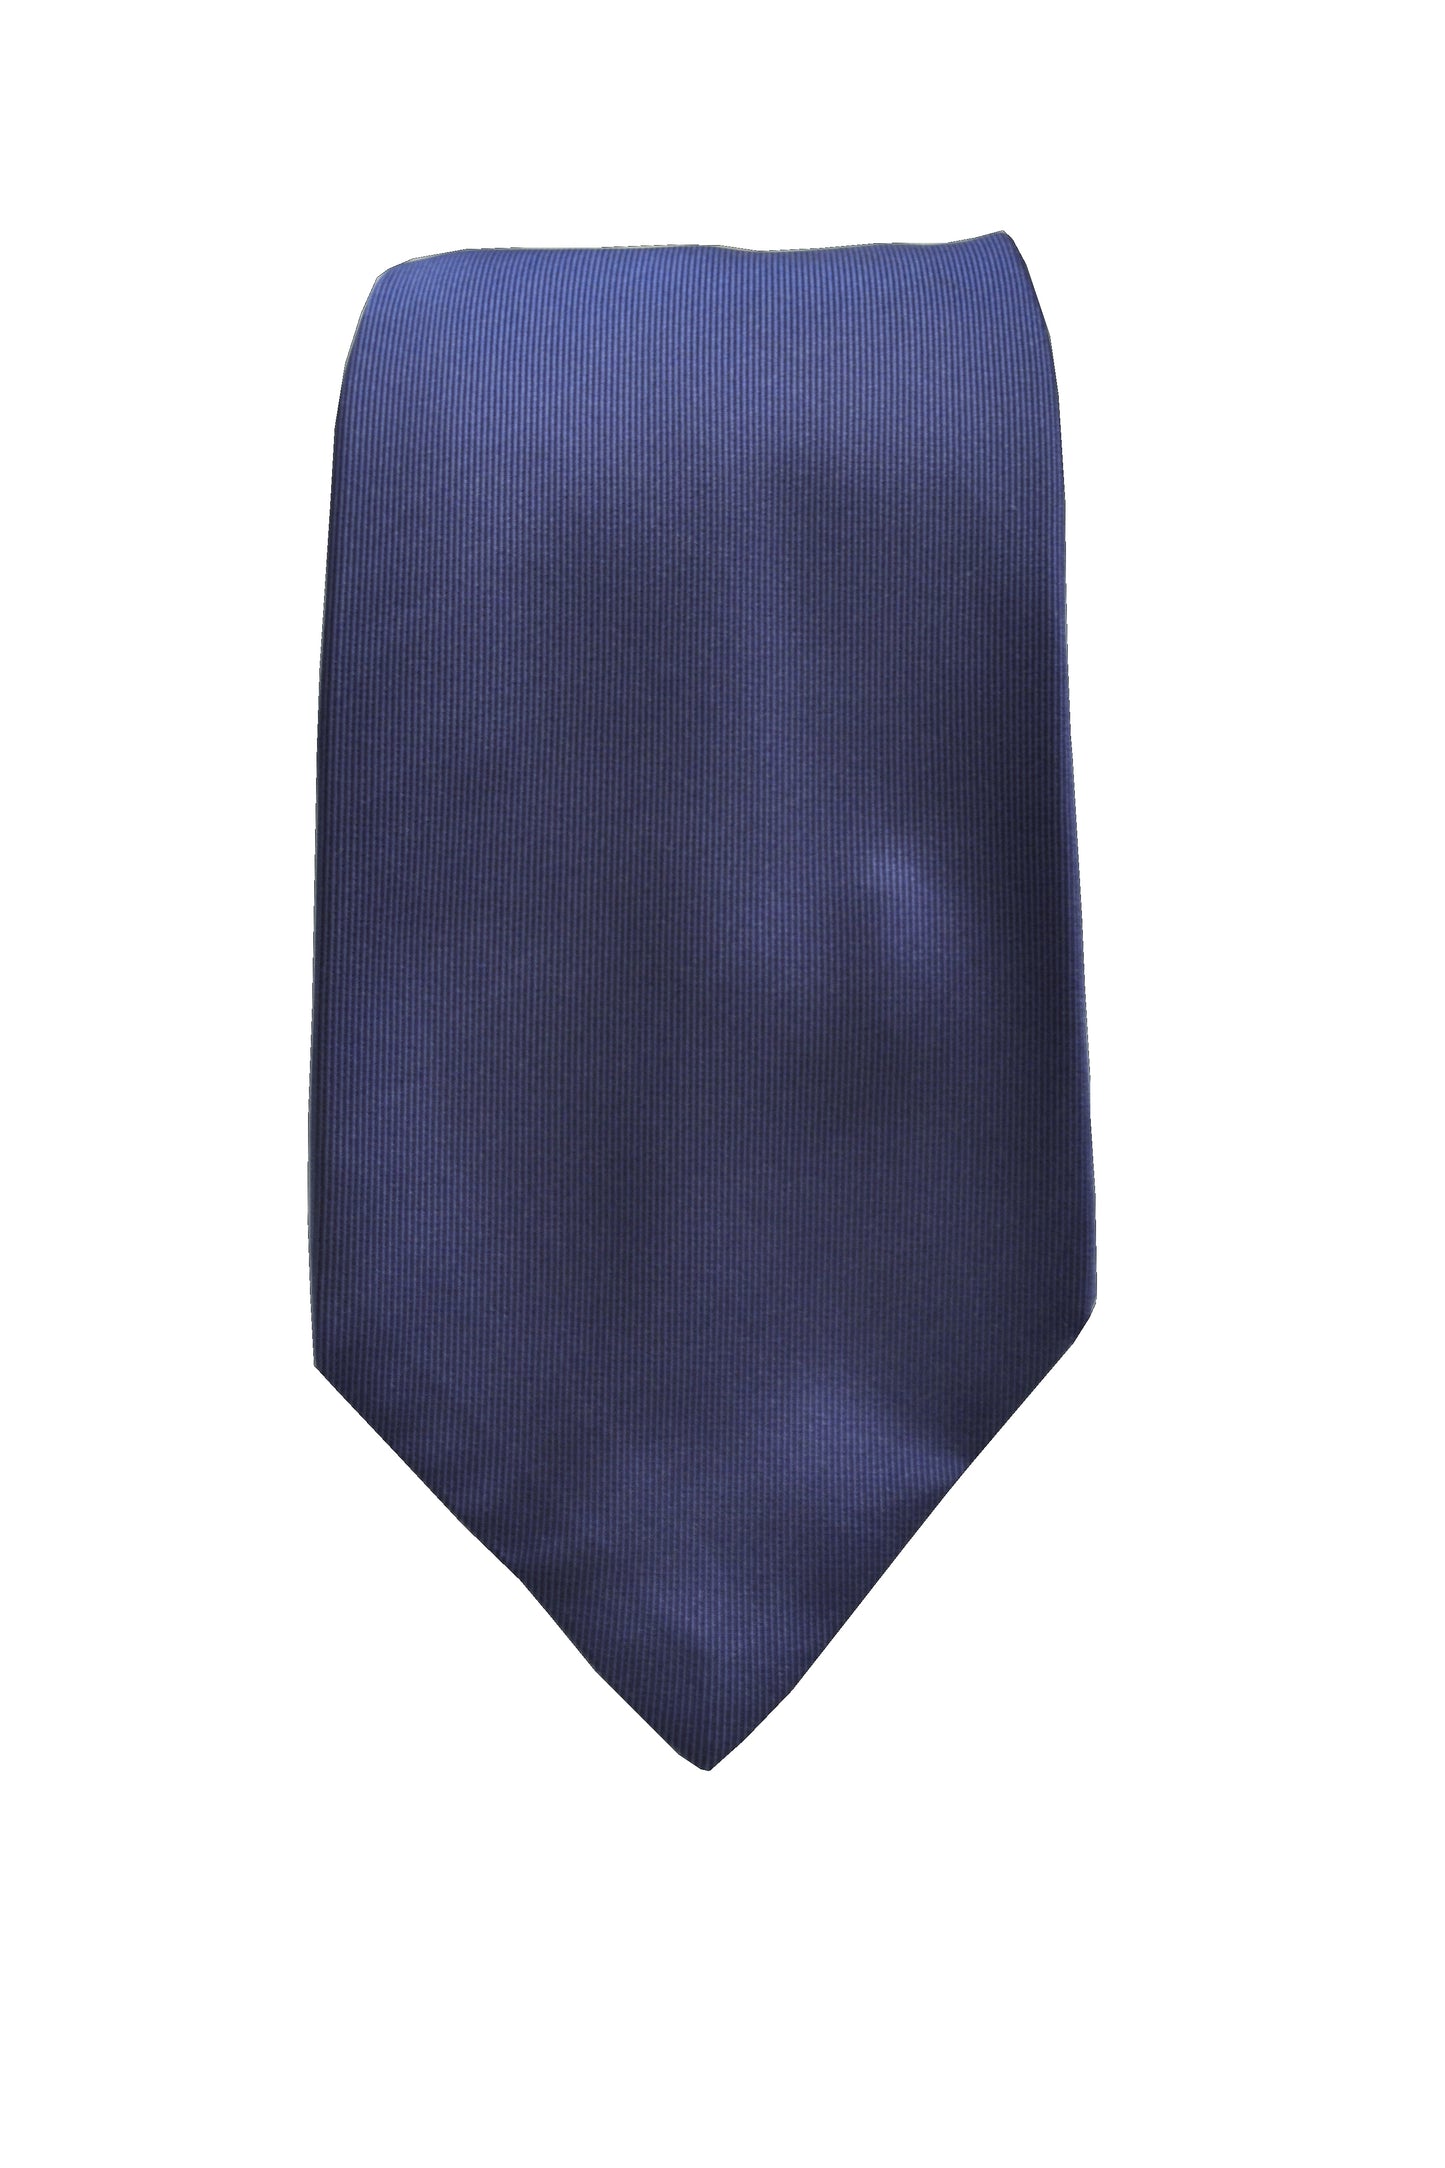 Cravatta 3 pieghe Blu Brillante Raso di Seta con portafortuna ricamata nascosta